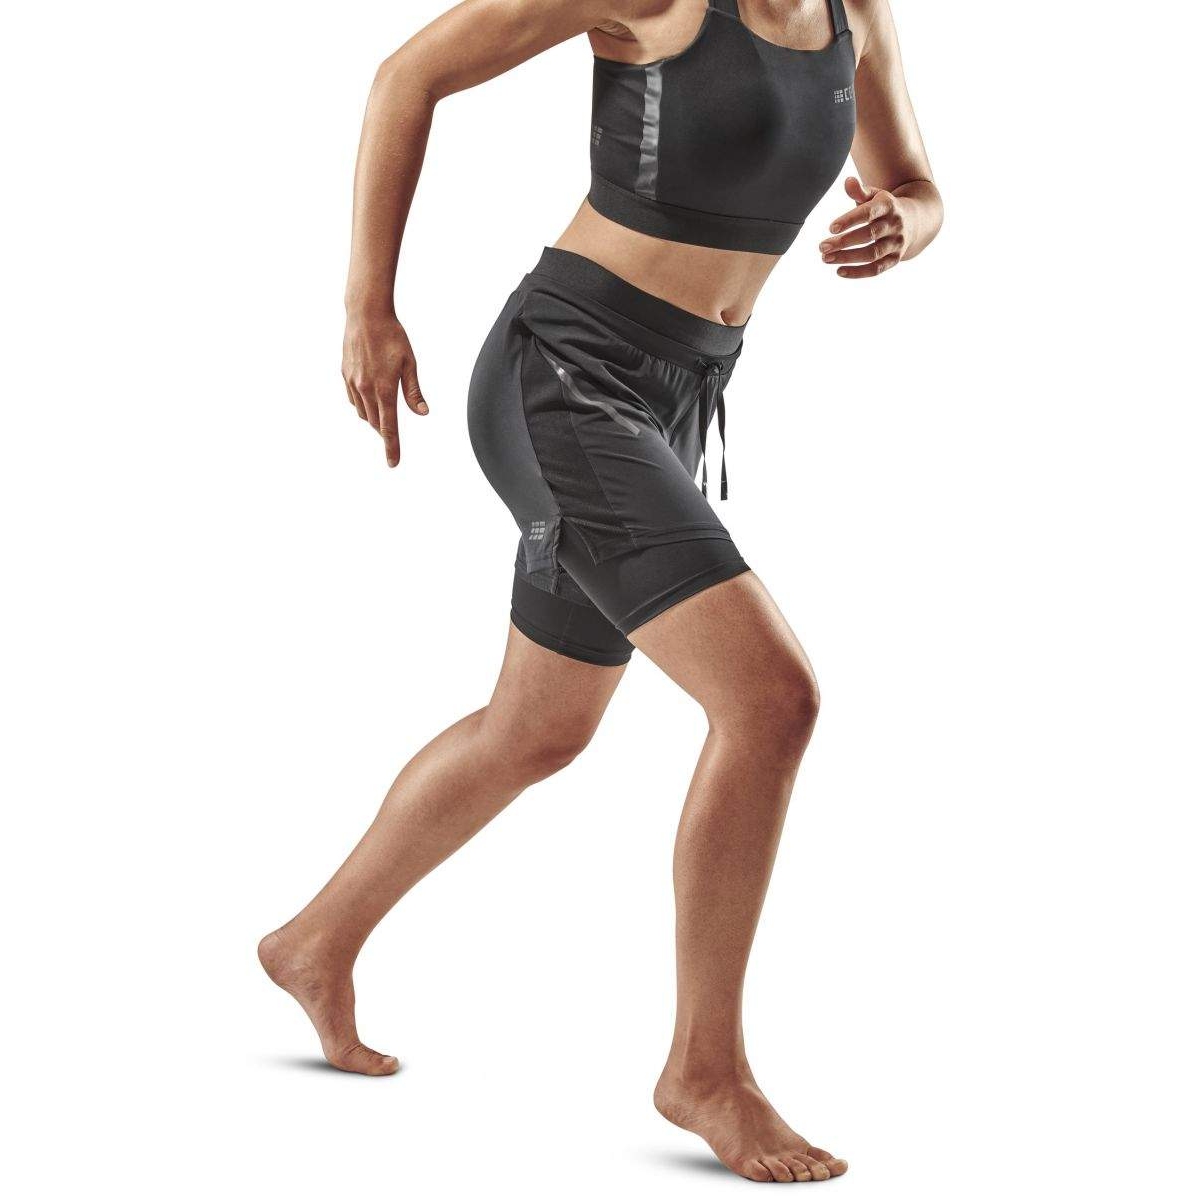 Produktbild von CEP Training 2in1 Shorts Damen - schwarz